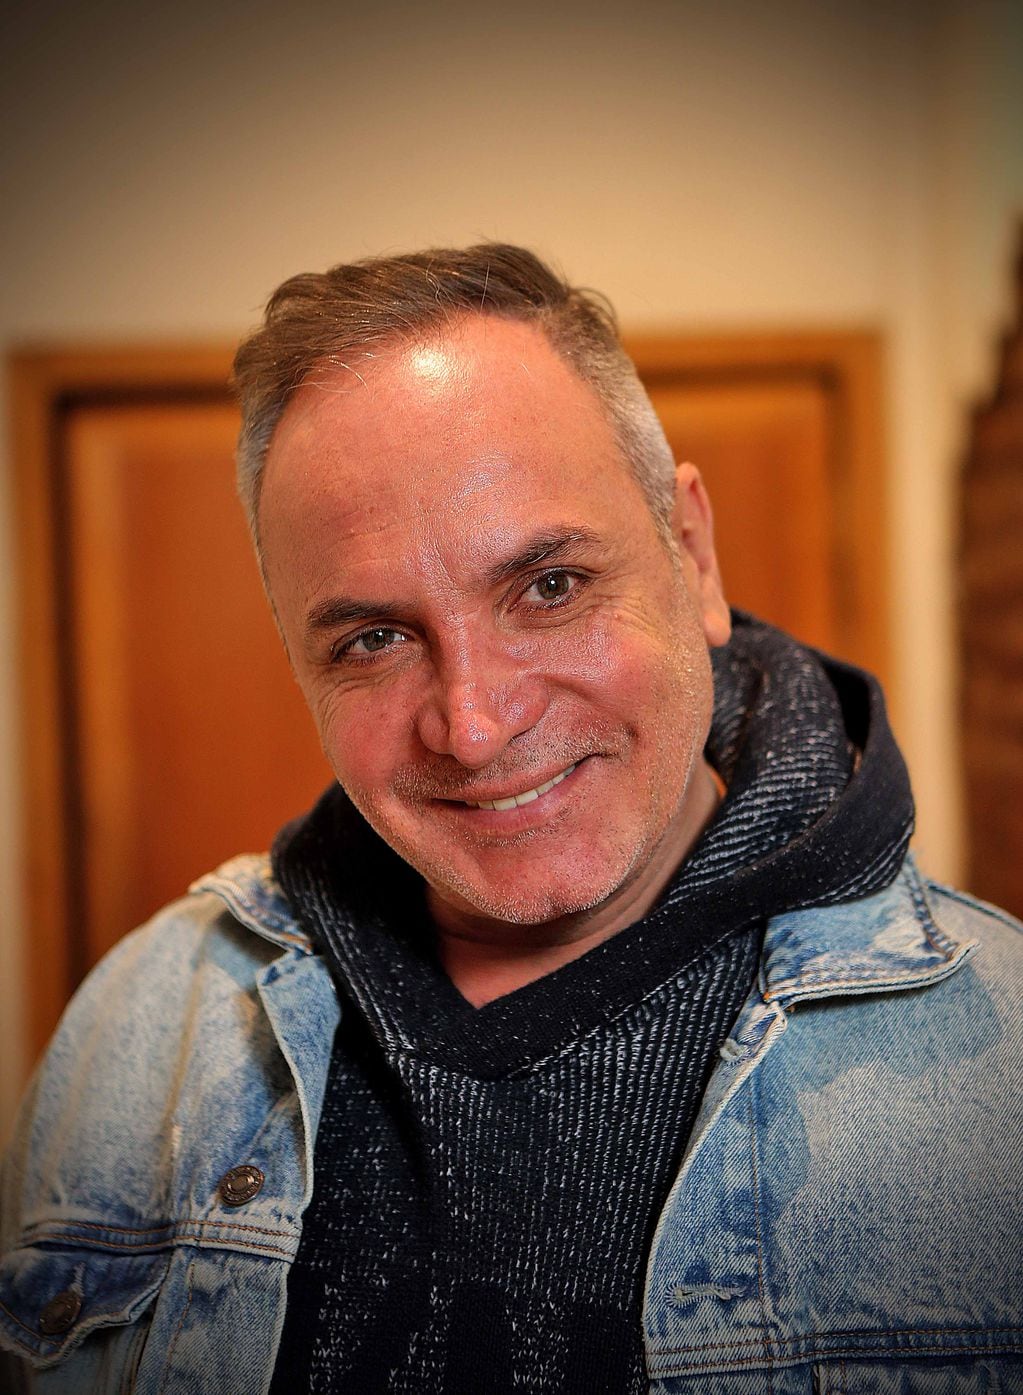 Entrevista a Luis Jara, cantante y animador. Foto: Andrés Pérez, La Cuarta.
